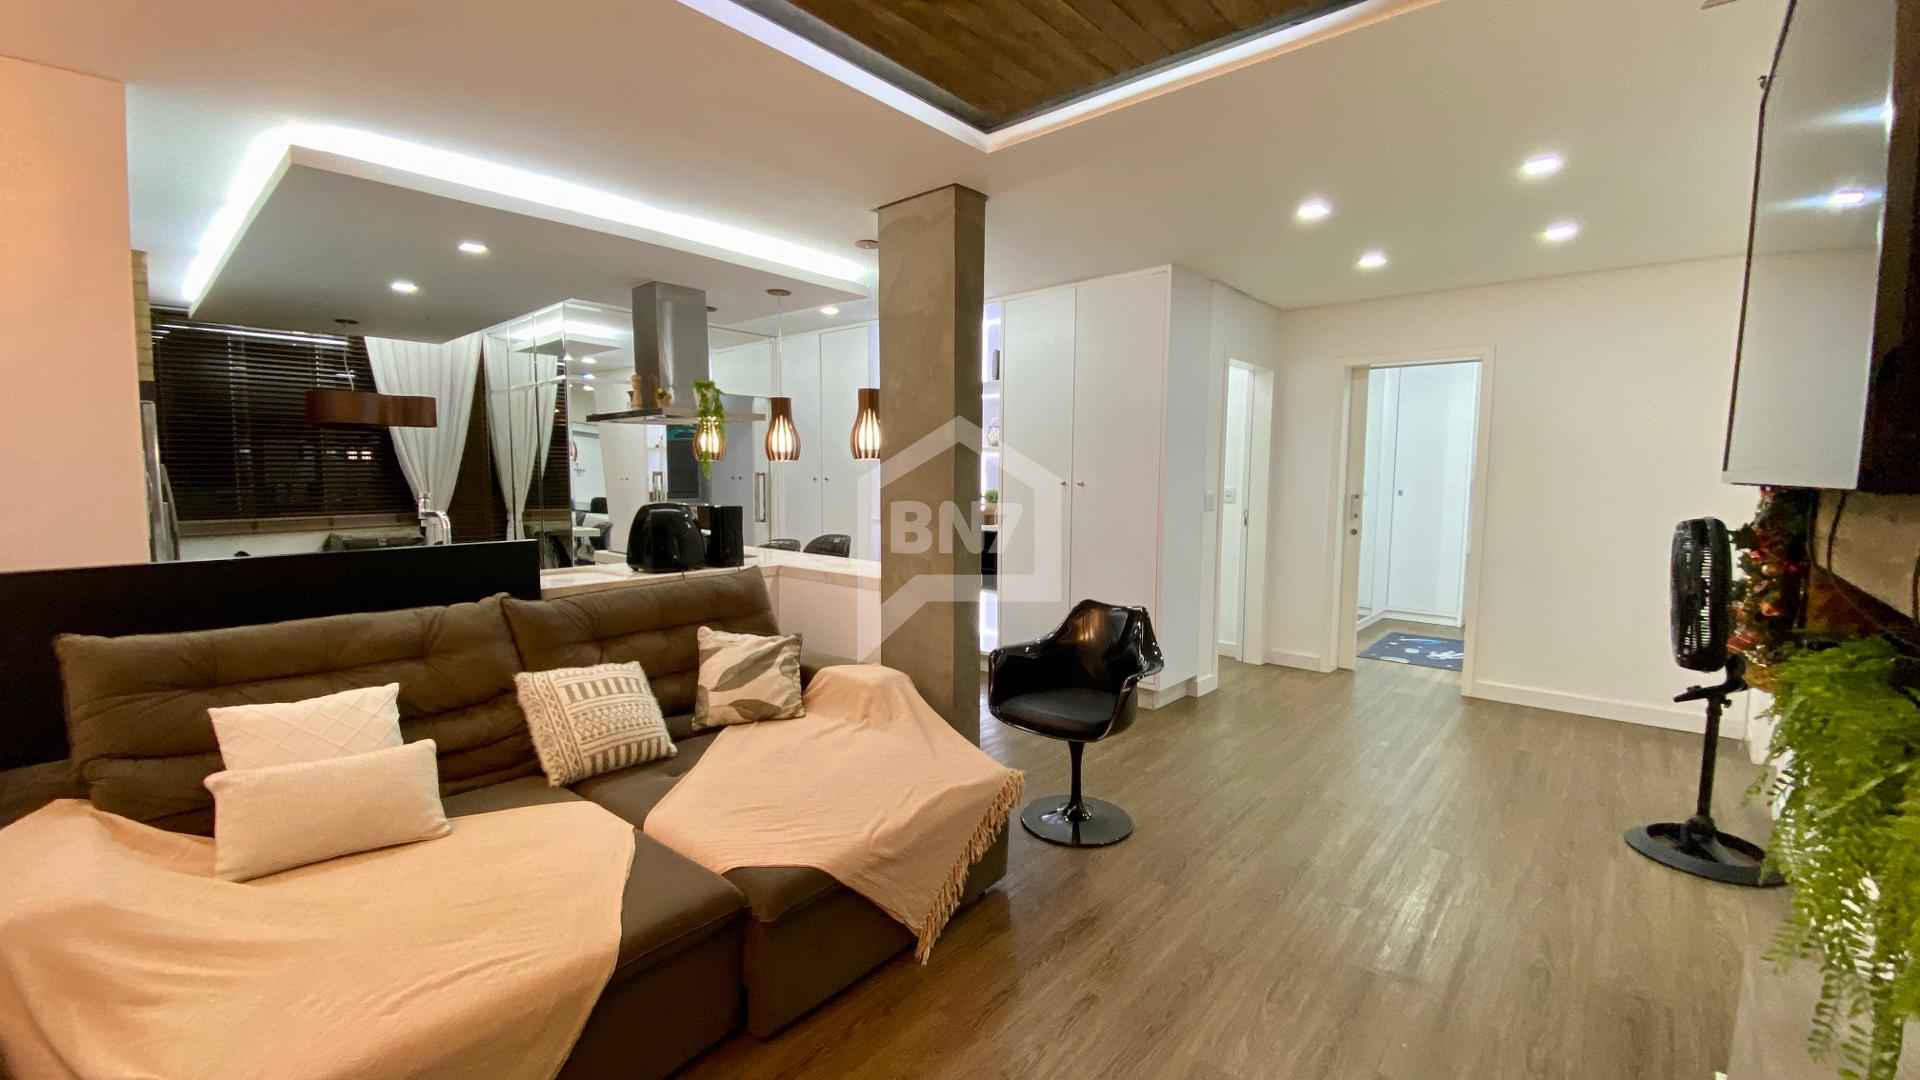 Apartamento finamente mobiliado  1 suite e 2 quartos, duas vagas de garagem,  em Francisco Beltro